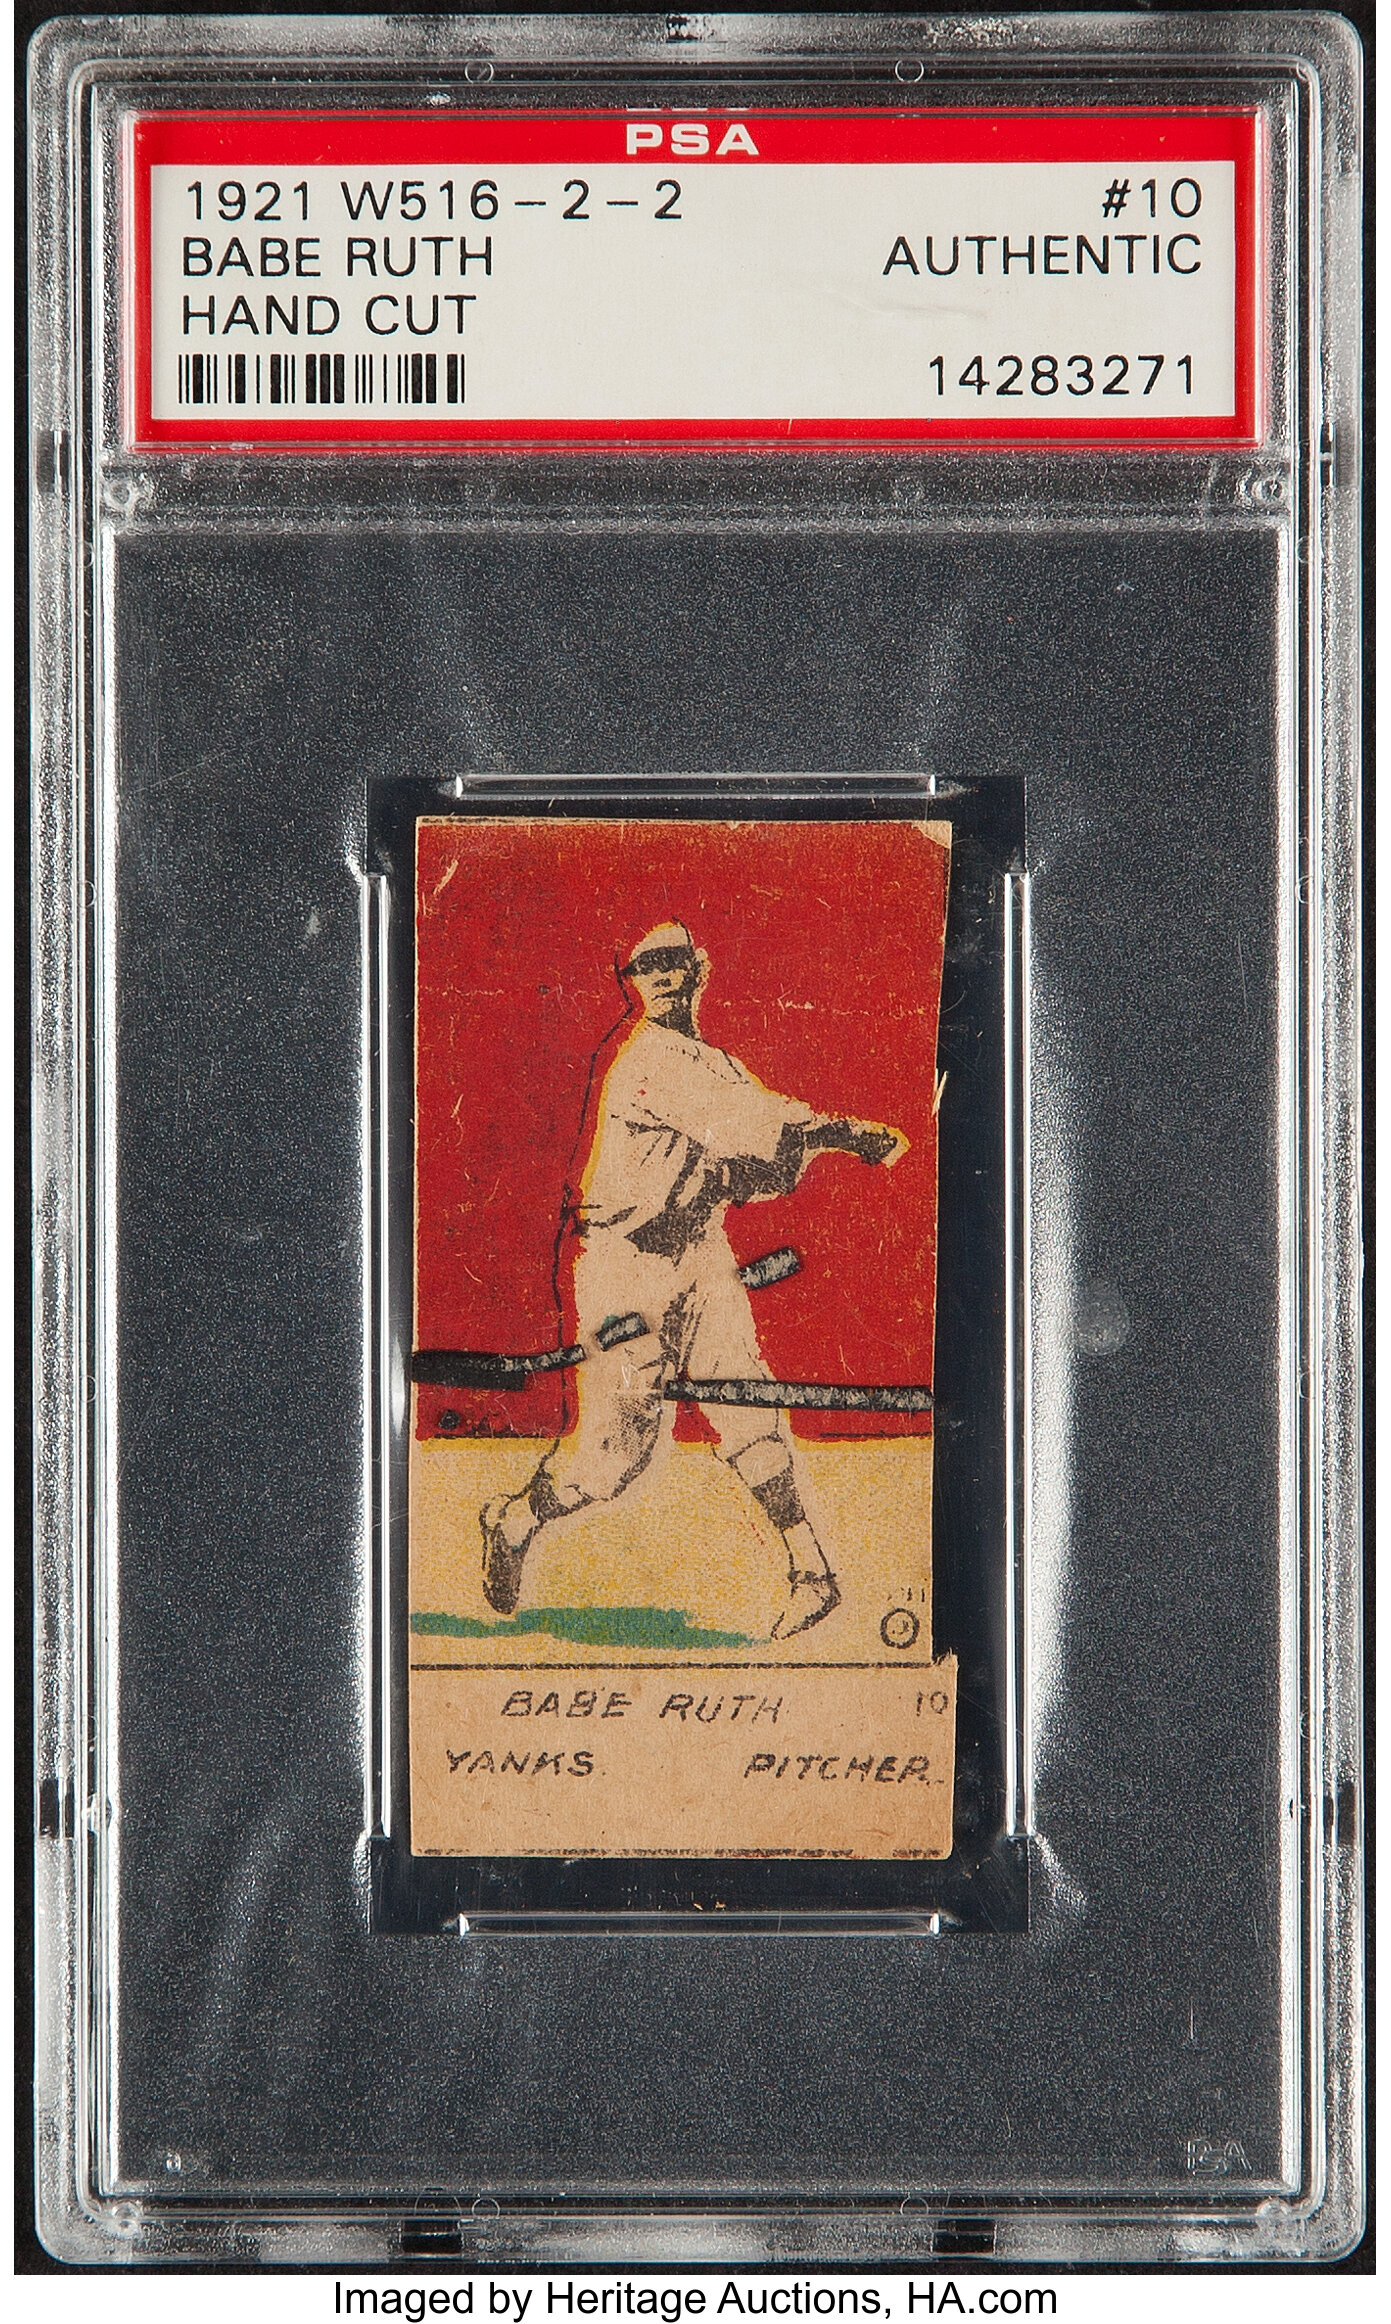 1921 W516-2-2 Babe Ruth